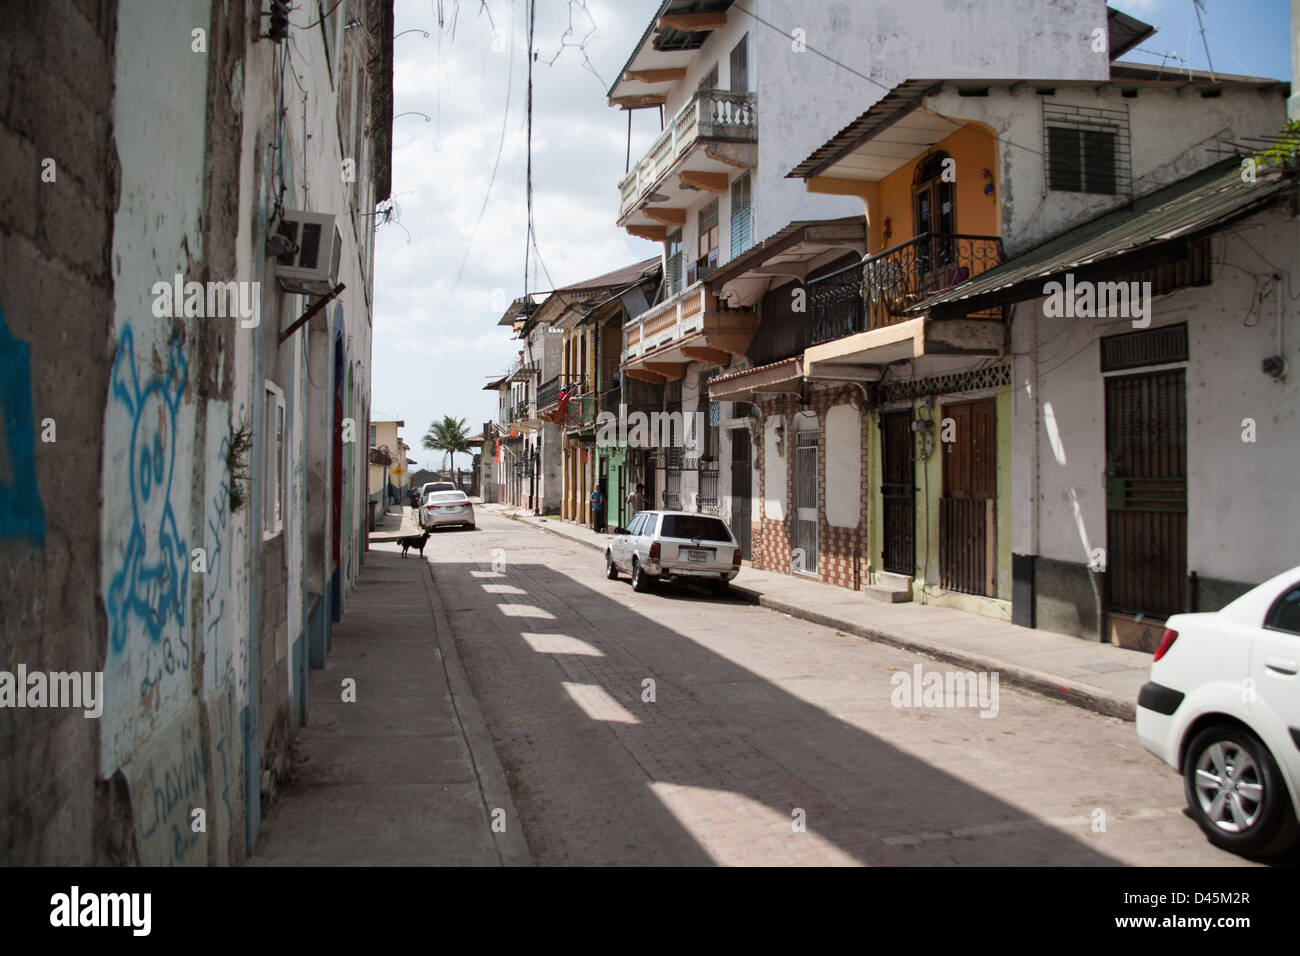 Straßenansicht der alten Gebäude und einen Hund, stehend auf dem Bürgersteig im Casco Viejo Viertel von Panama-Stadt. Stockfoto